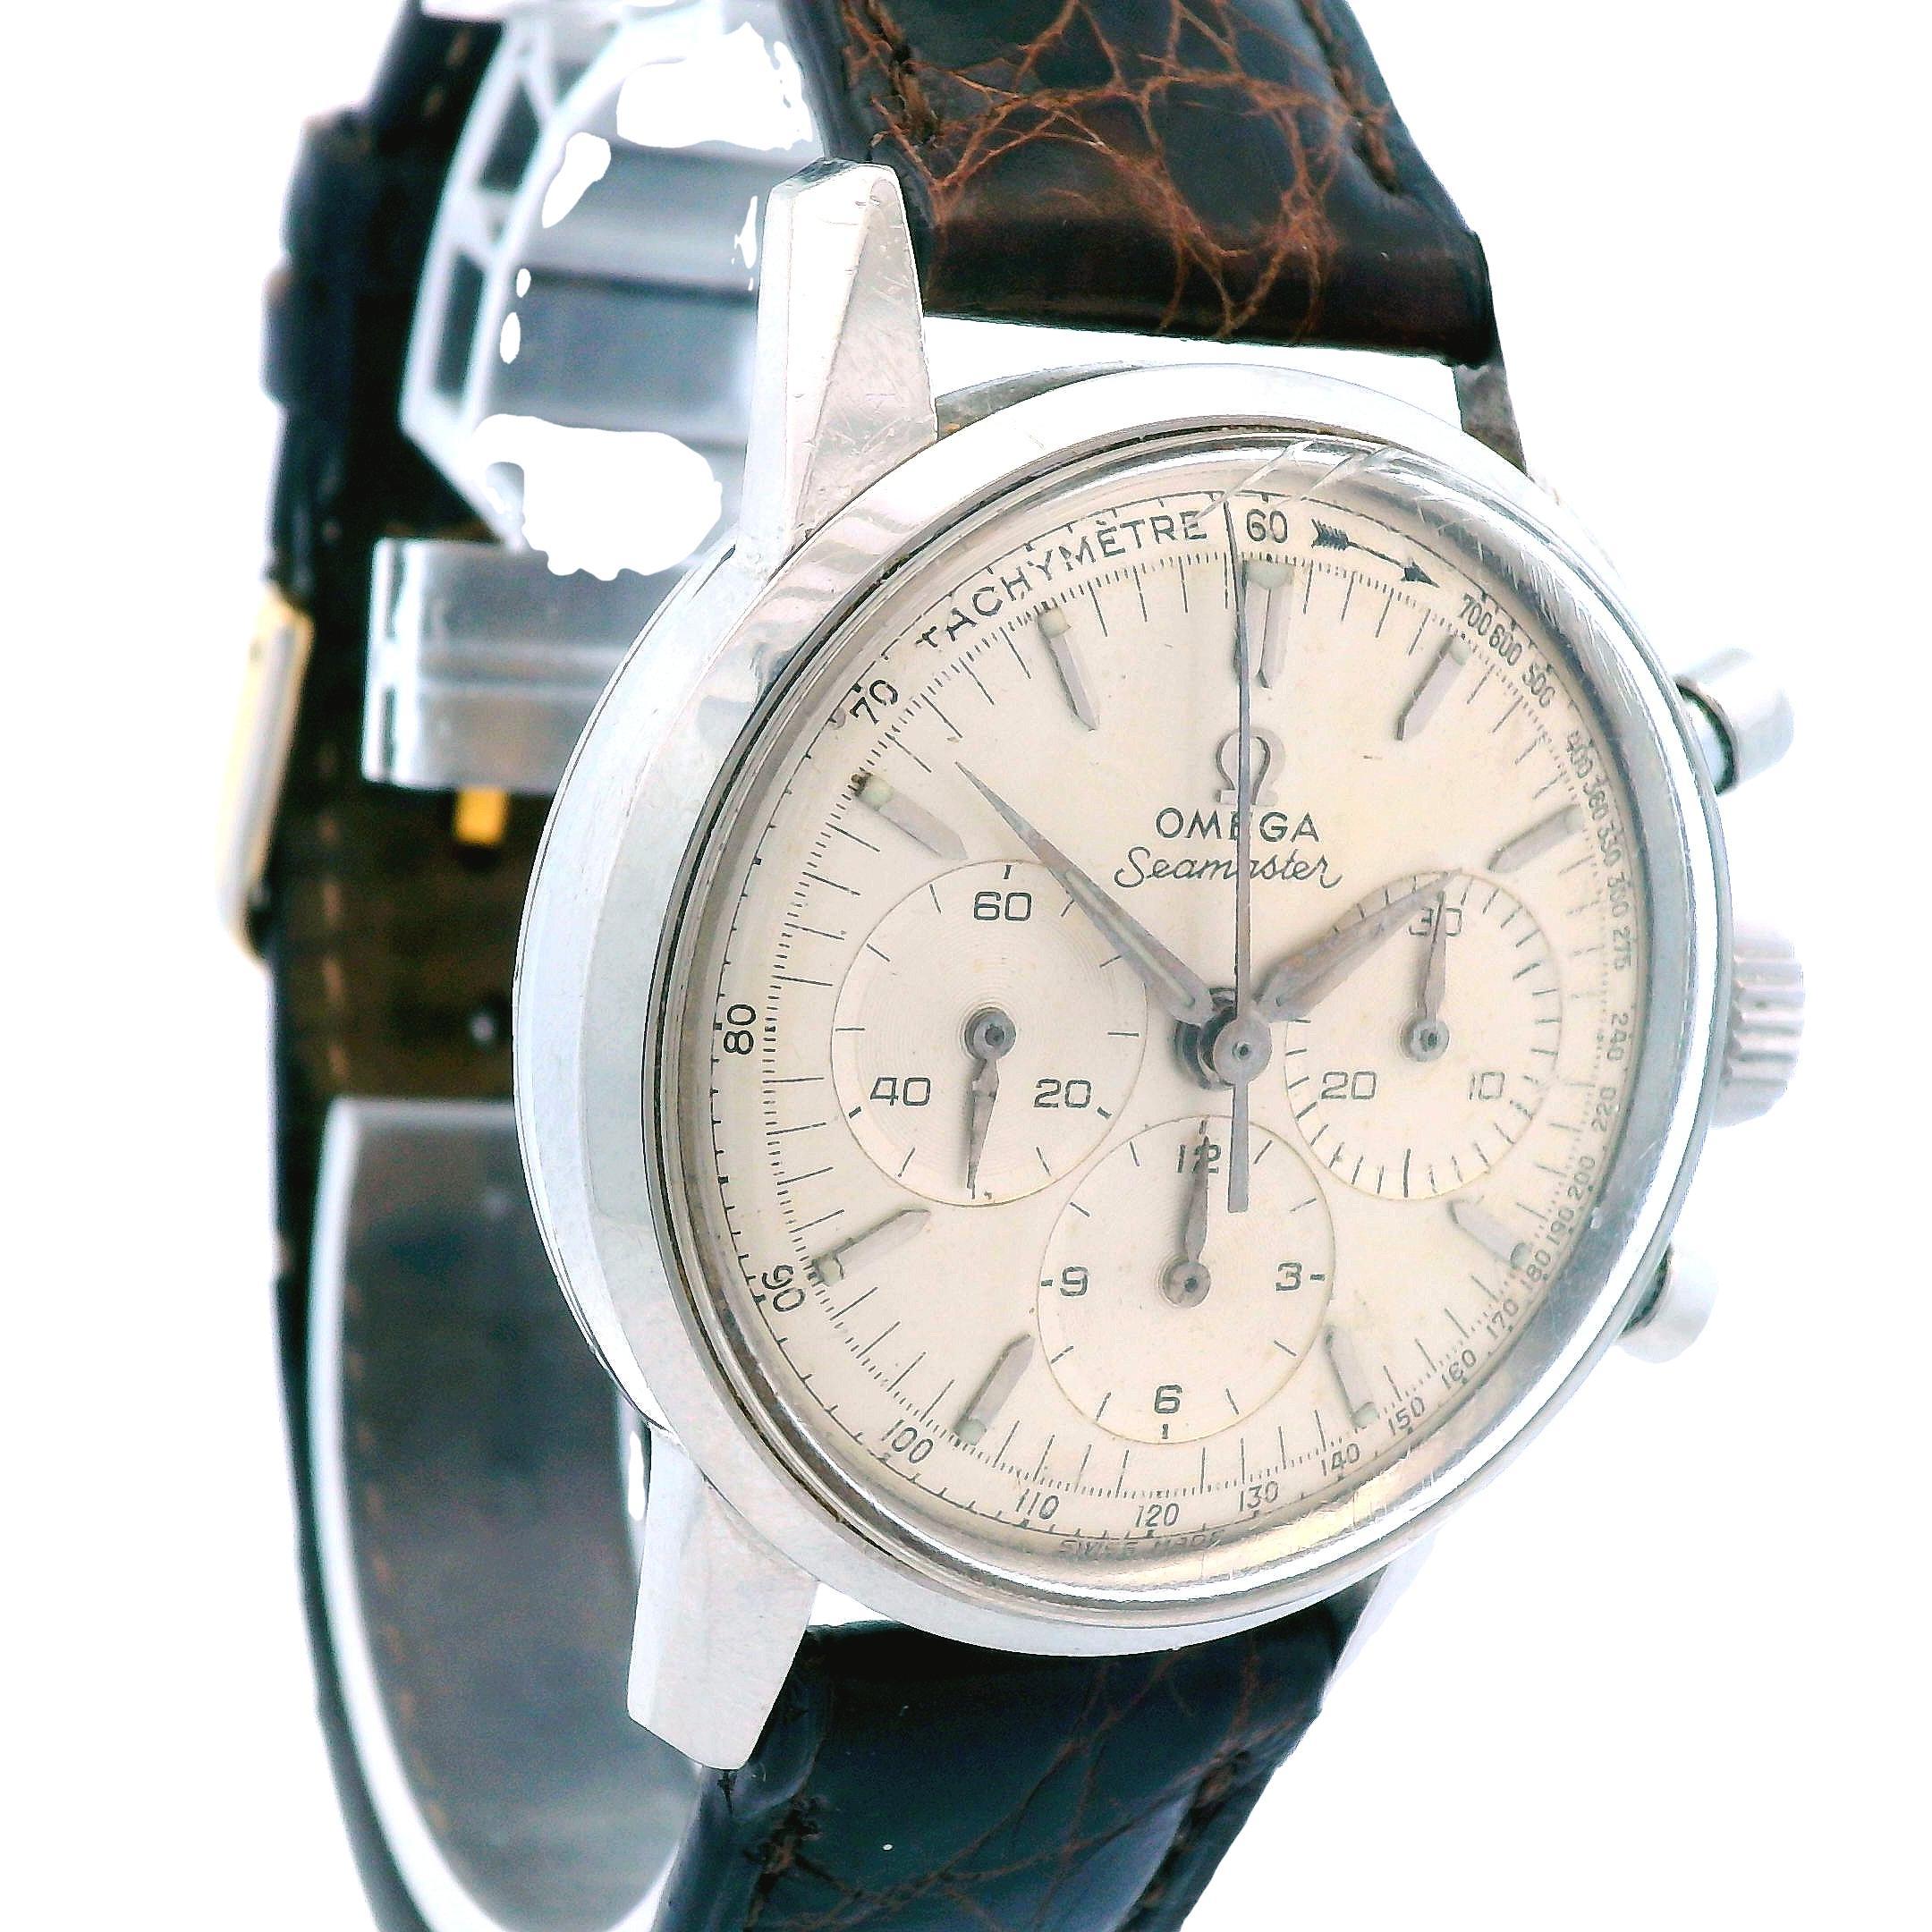 Il s'agit d'un chronographe Omega Seamaster des années 1960 en état de marche. Cette montre chronographe est fabriquée en acier inoxydable et s'accompagne d'un magnifique bracelet en cuir. La montre est entièrement estampillée Omega avec les marques